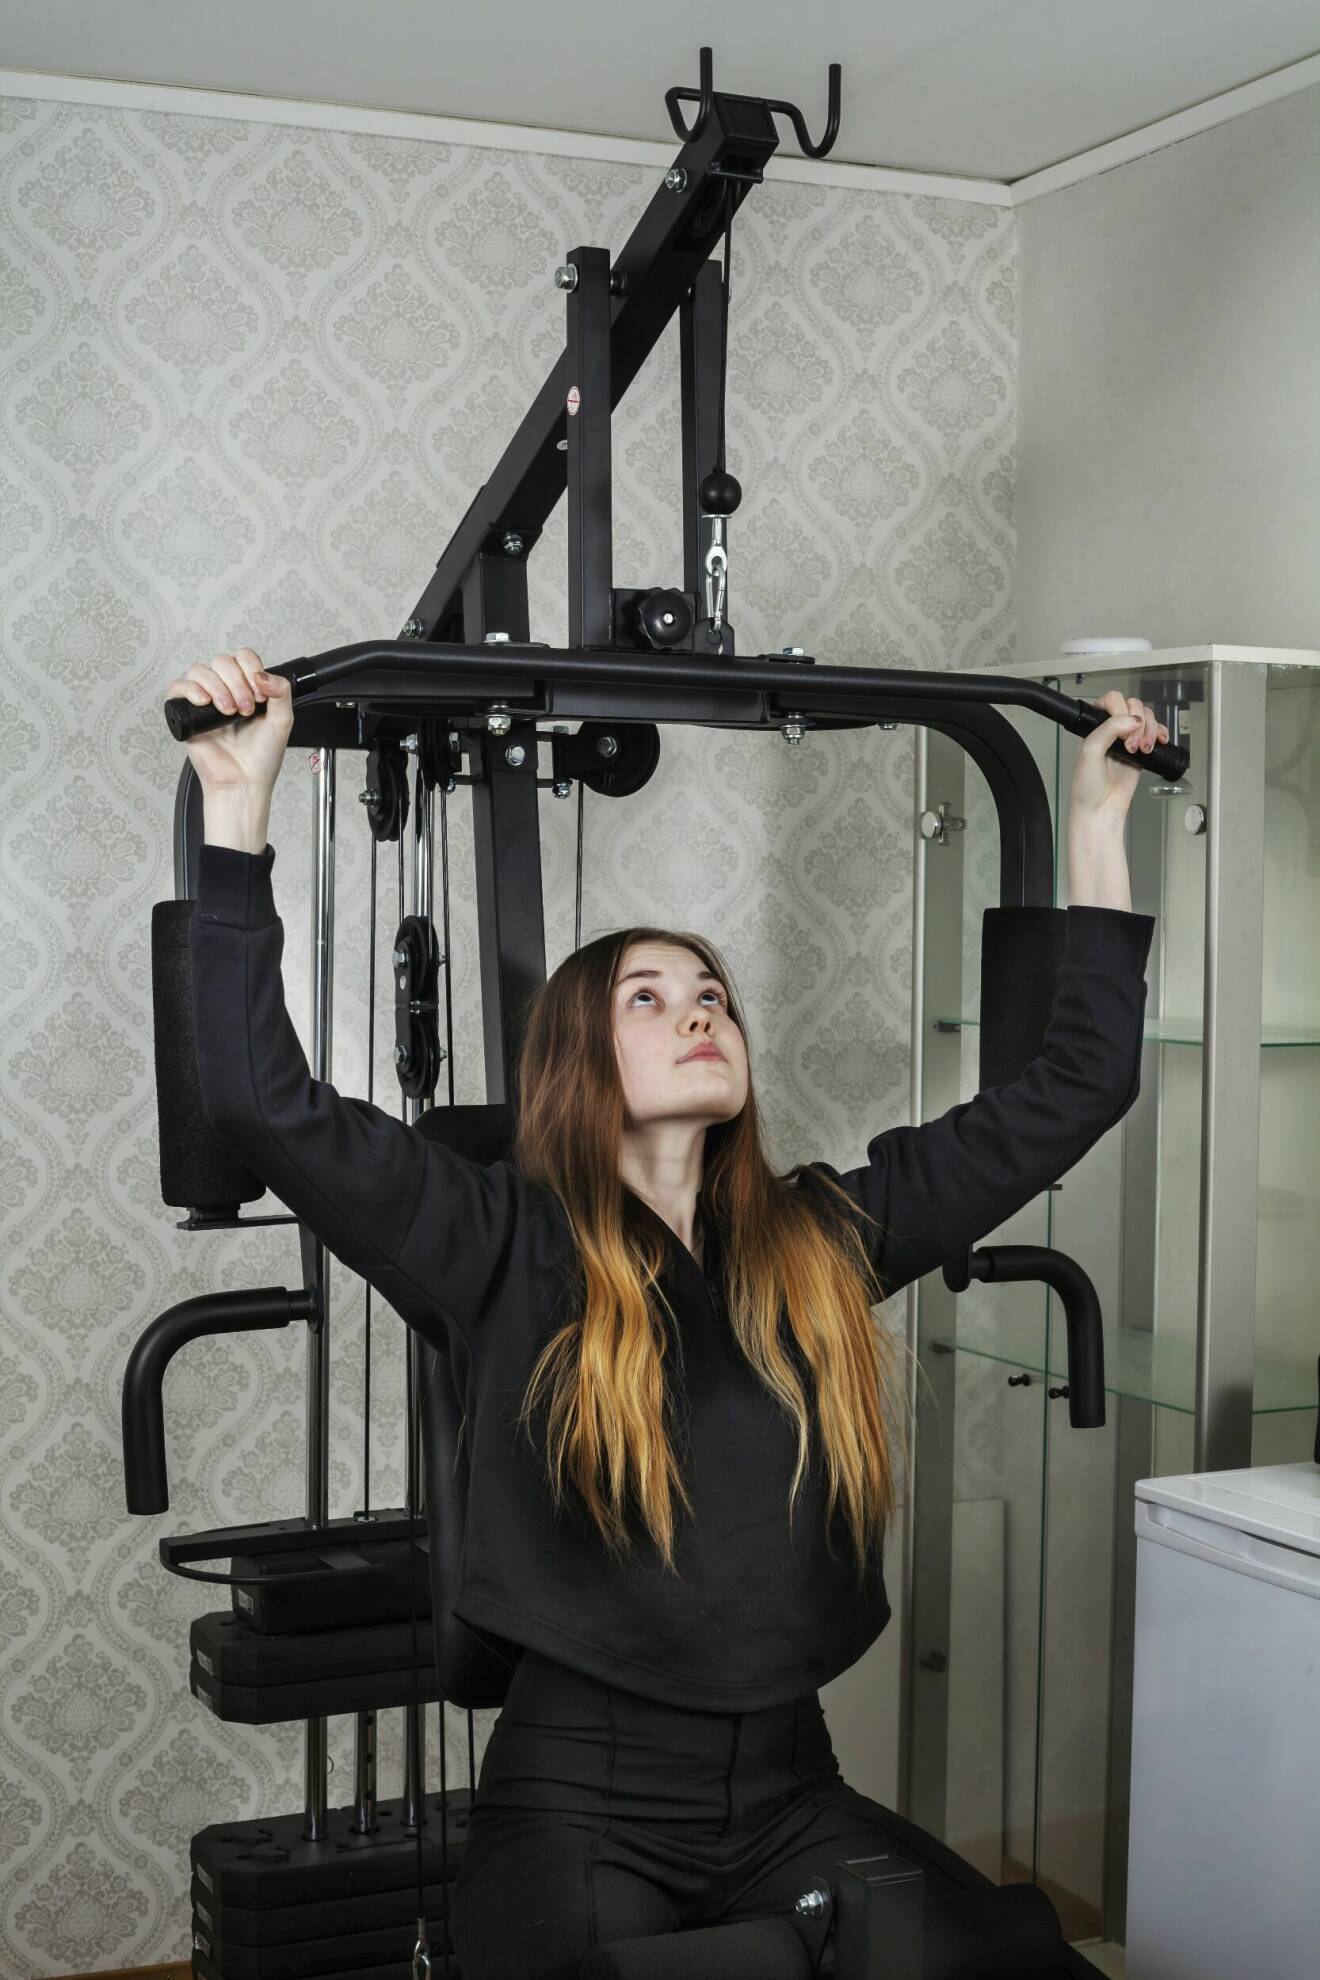 Tilde sitter i en träningsmaskin och berättar att hon måste träna varje dag för att orka med vardagen.